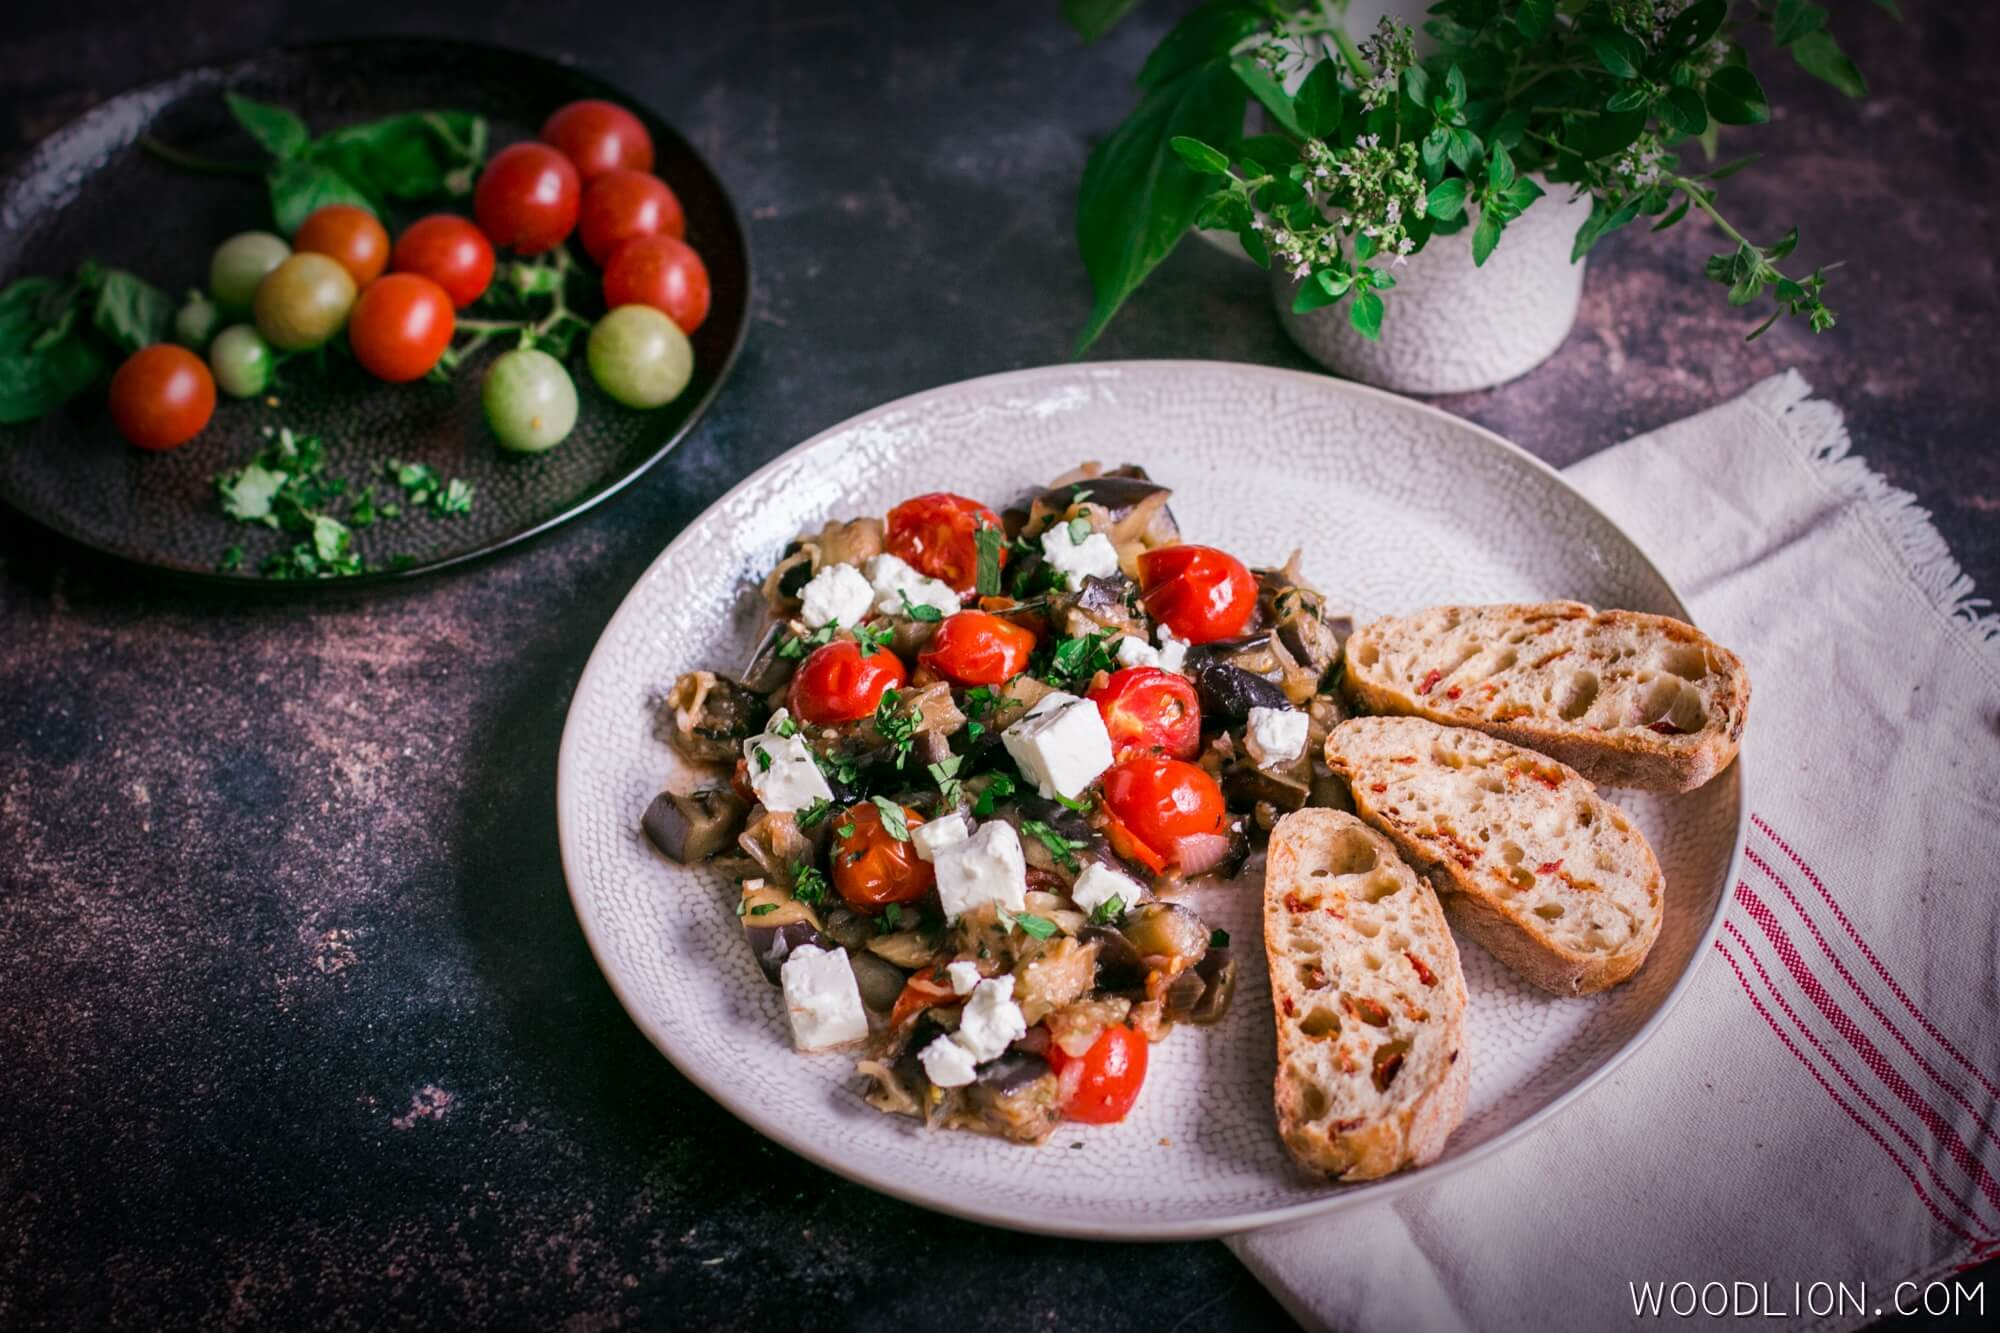 Woodlion Gastor Blog#7 - Könnyű nyári zöldségragu padlizsánnal és mediterrán fűszerekkel